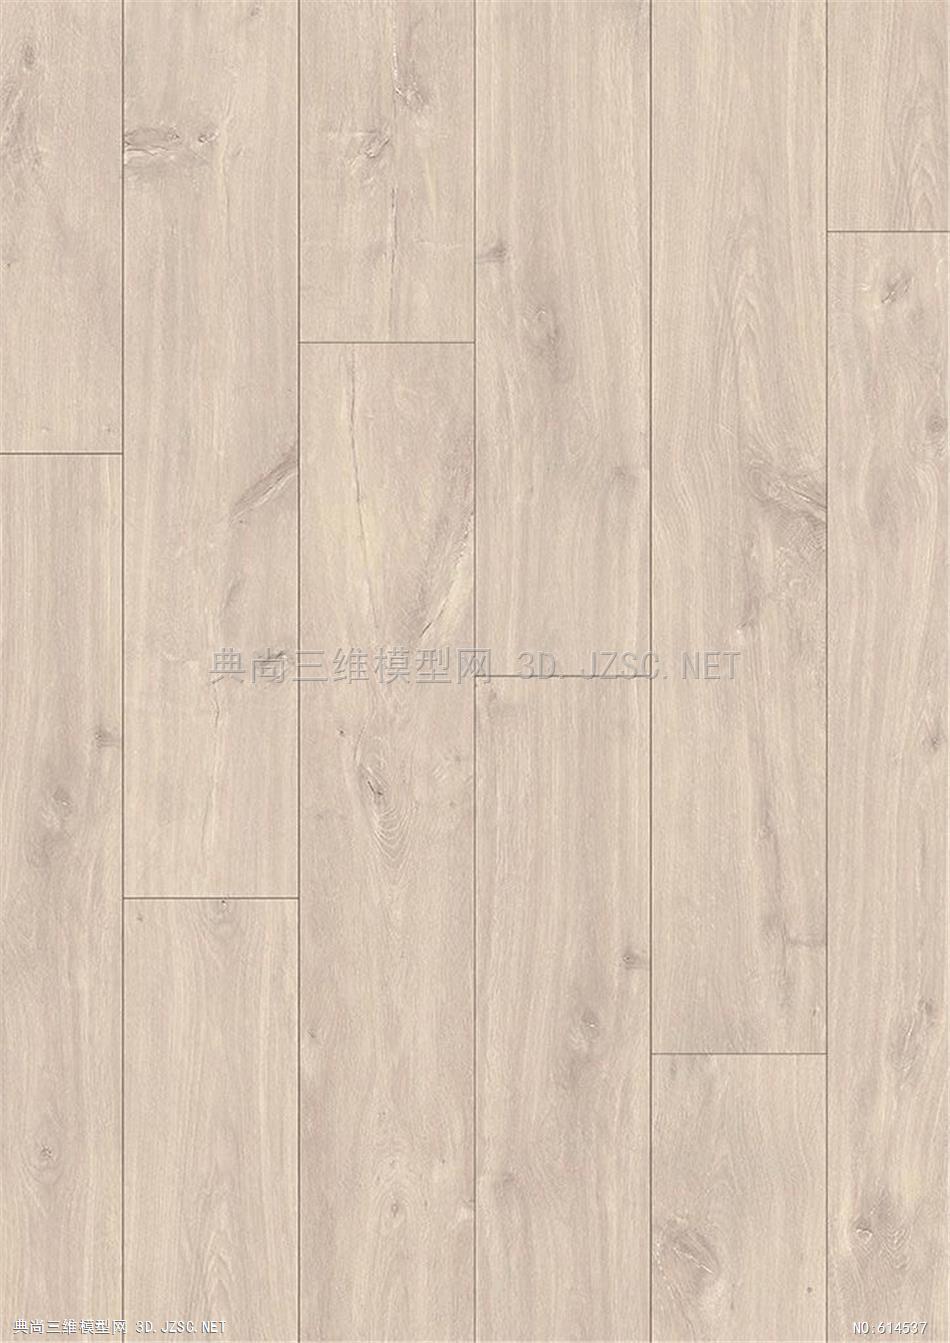 木饰面 木纹 木材  高清材质贴图 (334)